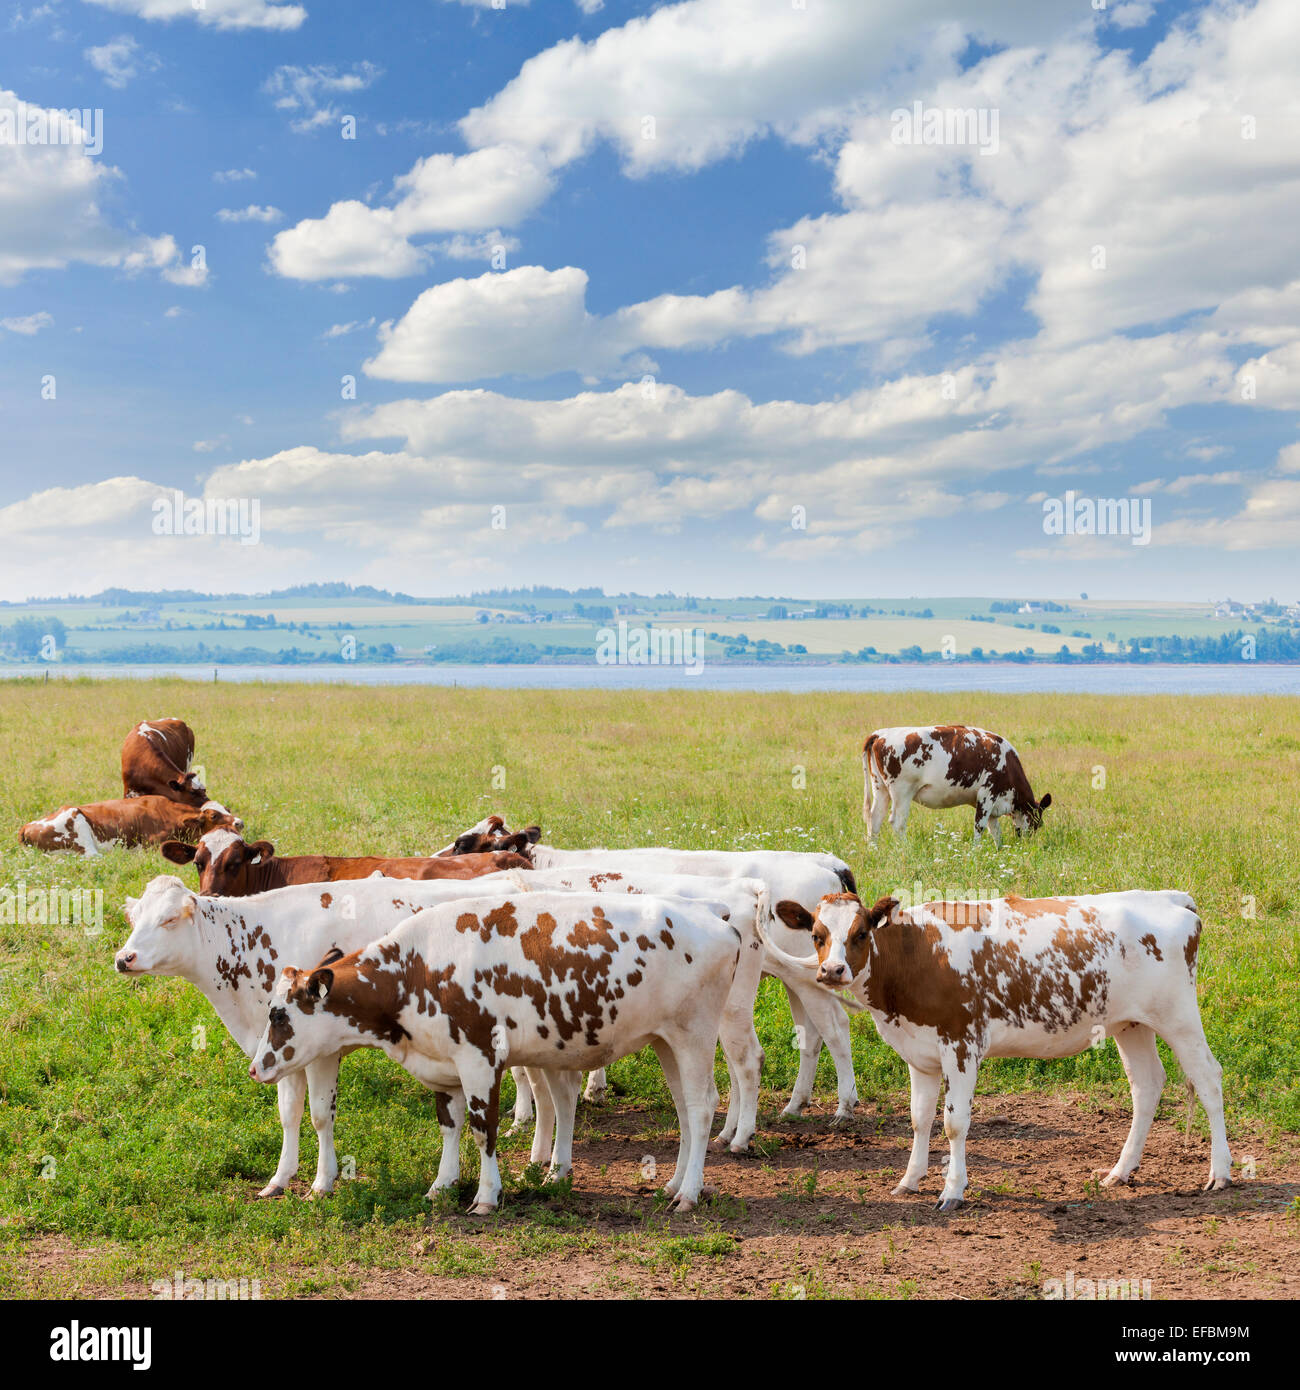 Troupeau de vaches Ayrshire de pâturage sur l'herbe fraîche dans la ville pittoresque de prairie au Prince Edward Island, Canada. Banque D'Images